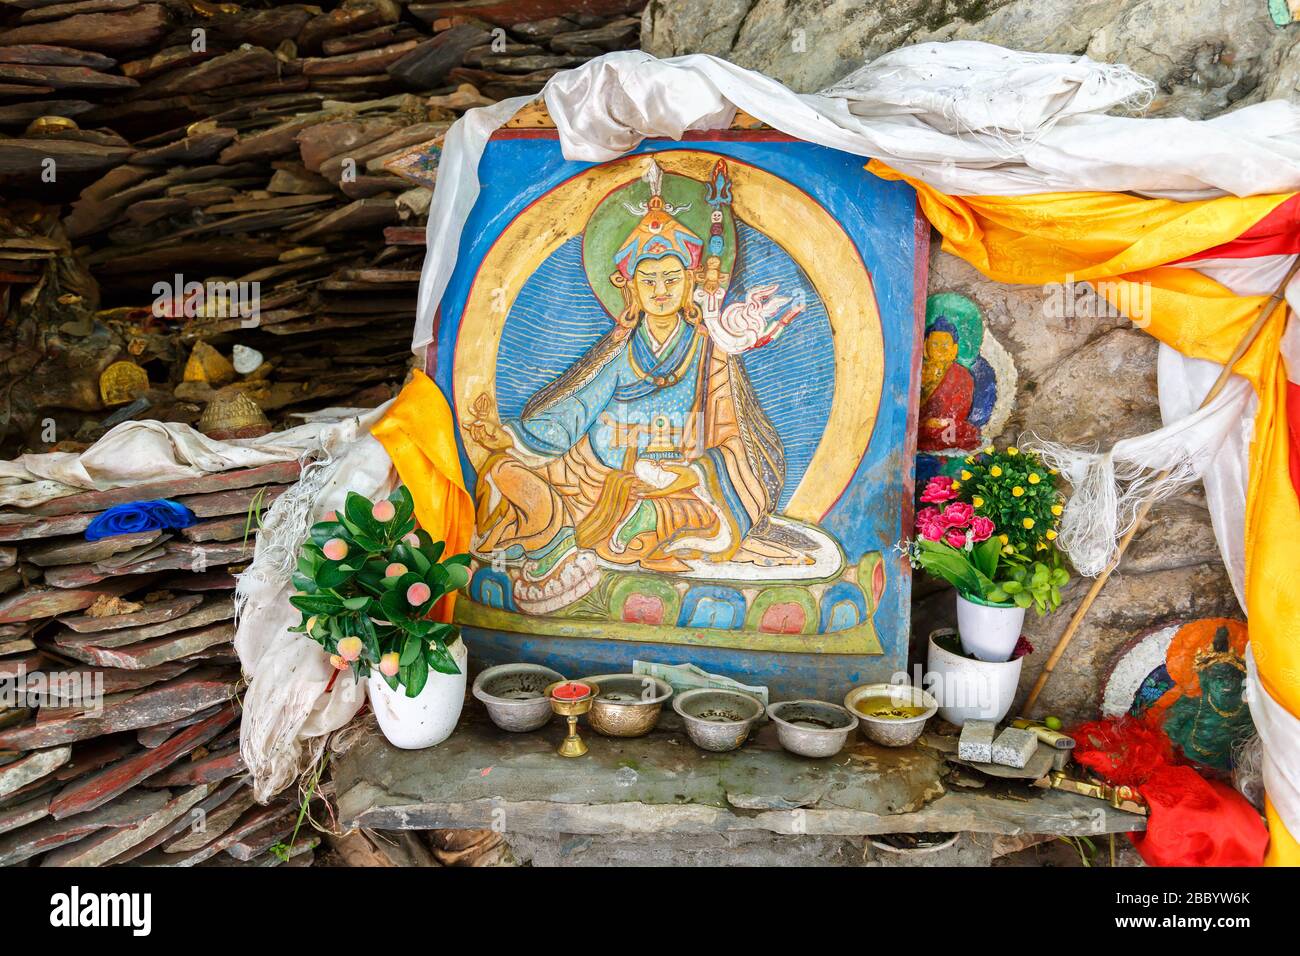 Peinture colorée d'une divinité du bouddhisme tibétain. Situé à l'extérieur dans un quartier proche du palais de Potala. Avec fleurs et autres offres. Art tibétain Banque D'Images